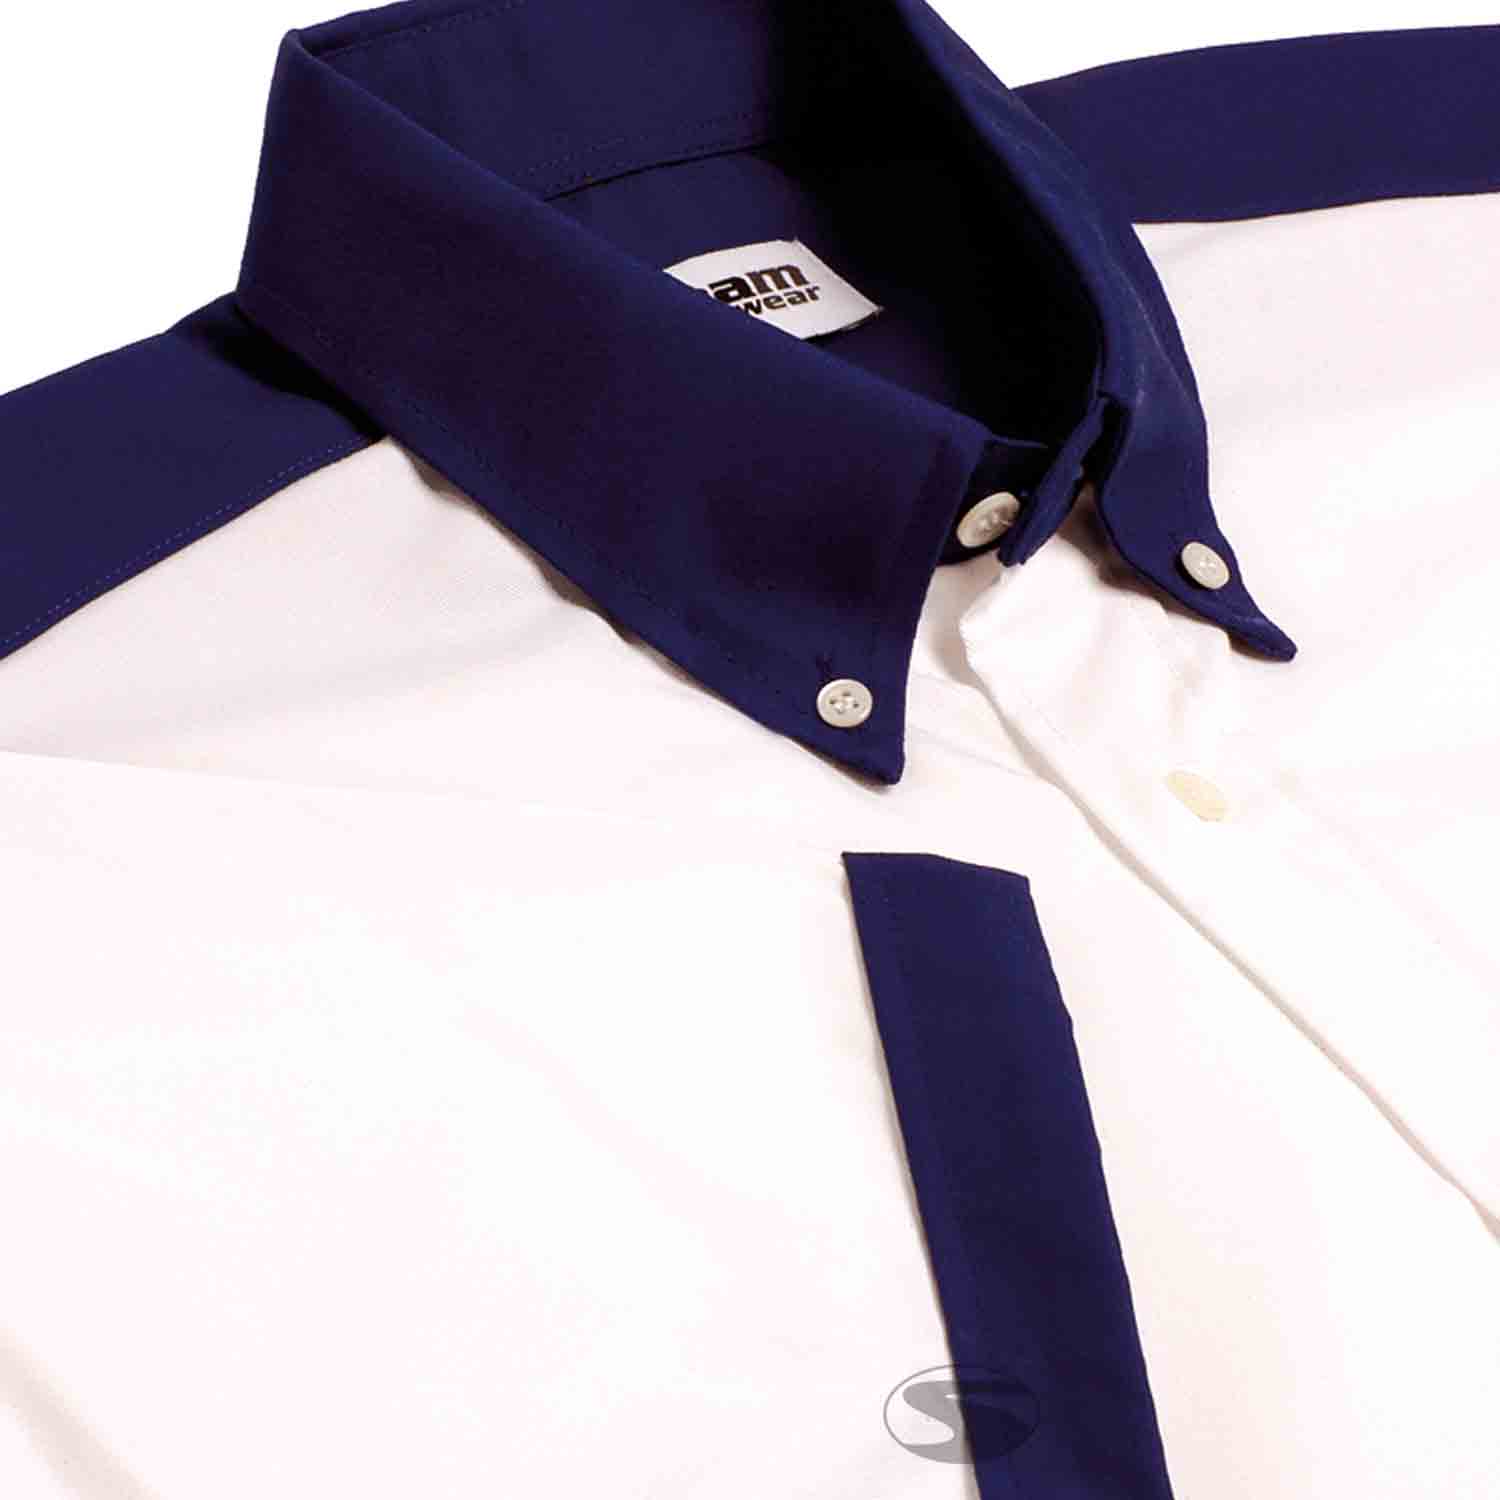 Teamwear Kurzarm Hemd, weiß/dunkelblau